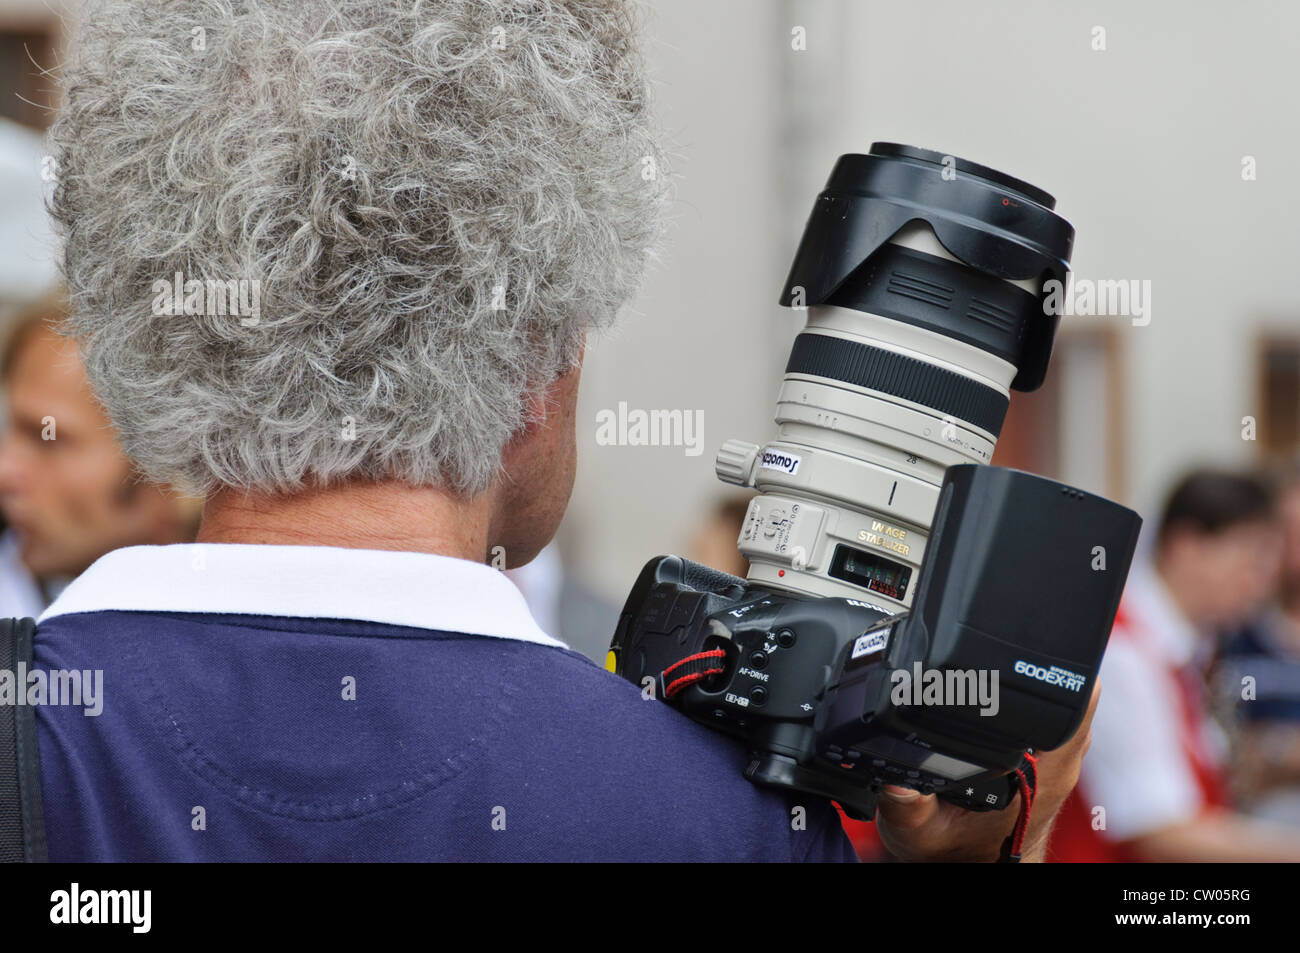 Adulto uomo caucasico con il grigio capelli ricci, maschio professionale fotografo, prendendo le immagini con un frame completo Canon DSLR Foto Stock